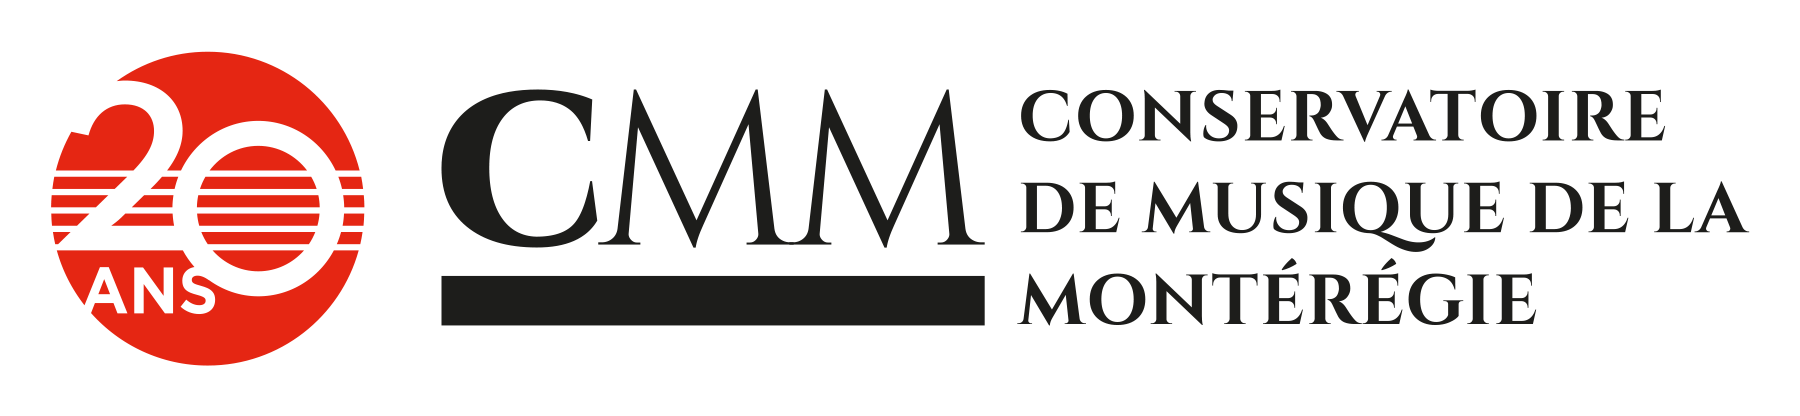 conservatoire-de-musique-de-la-monteregie-logo-20-ans.png